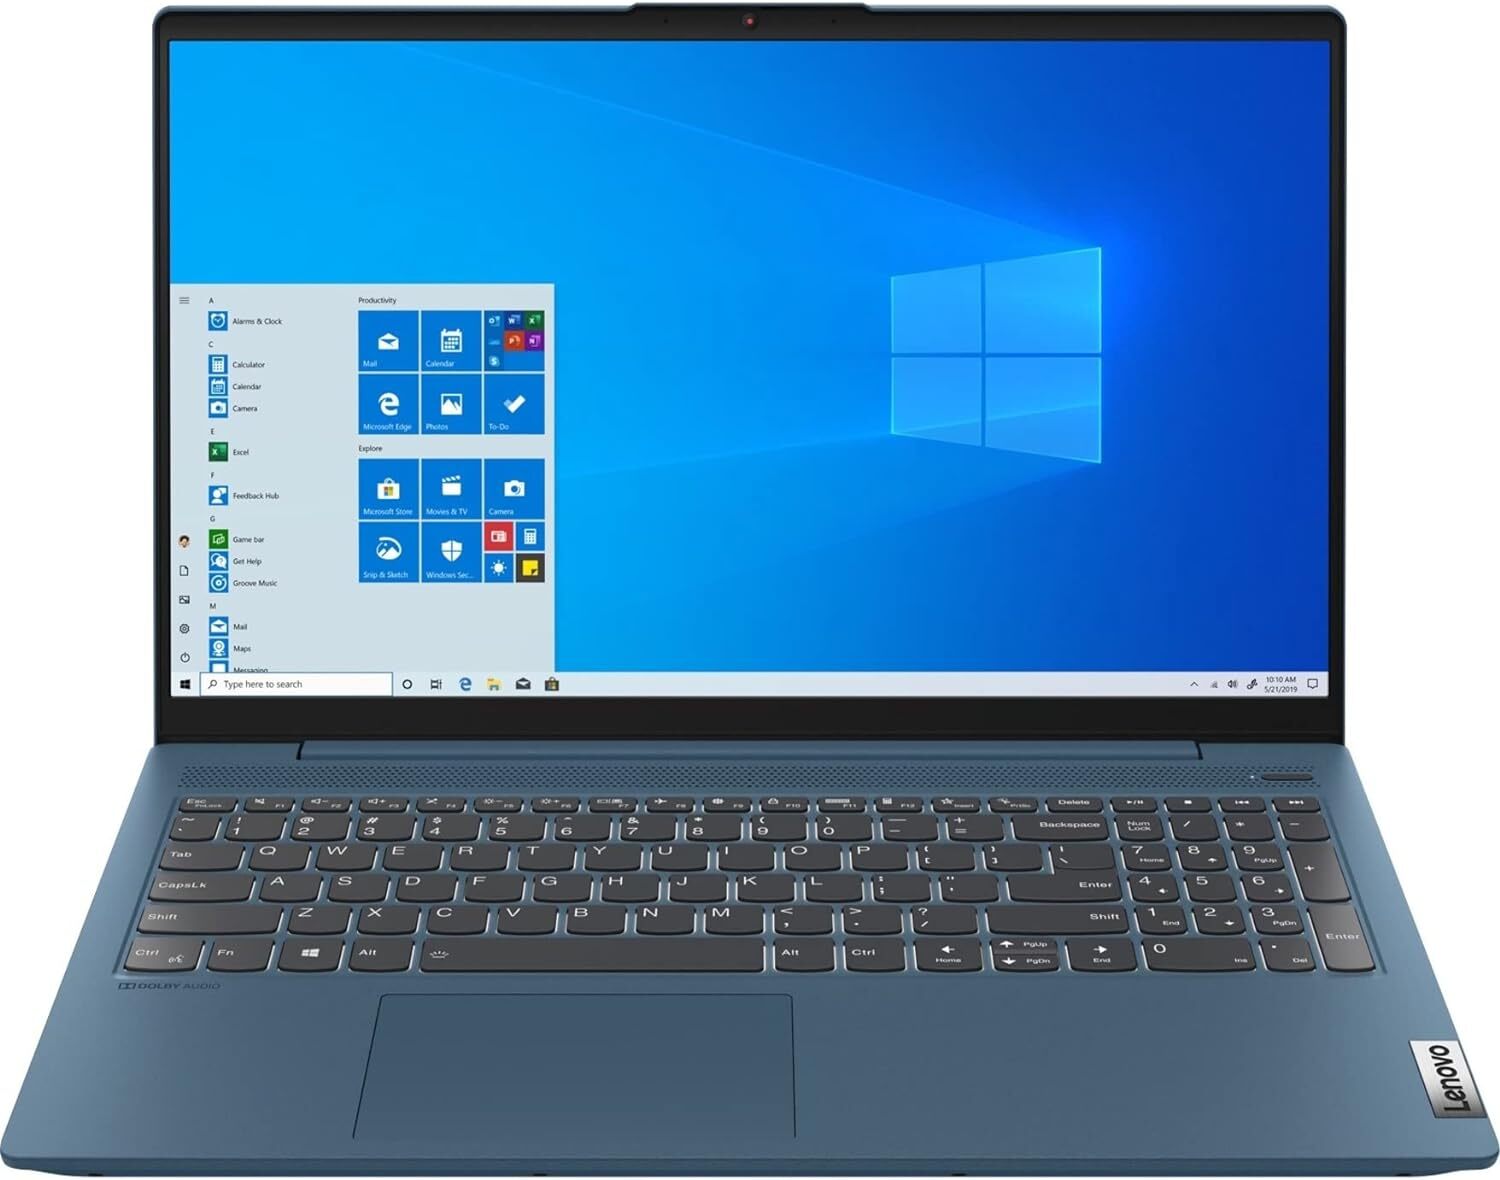  لپ تاپ 15.6 اینچی Lenovo مدل IdeaPad 5 15ITL05 گرافیک MX450 | لاکچری لپ تاپ 